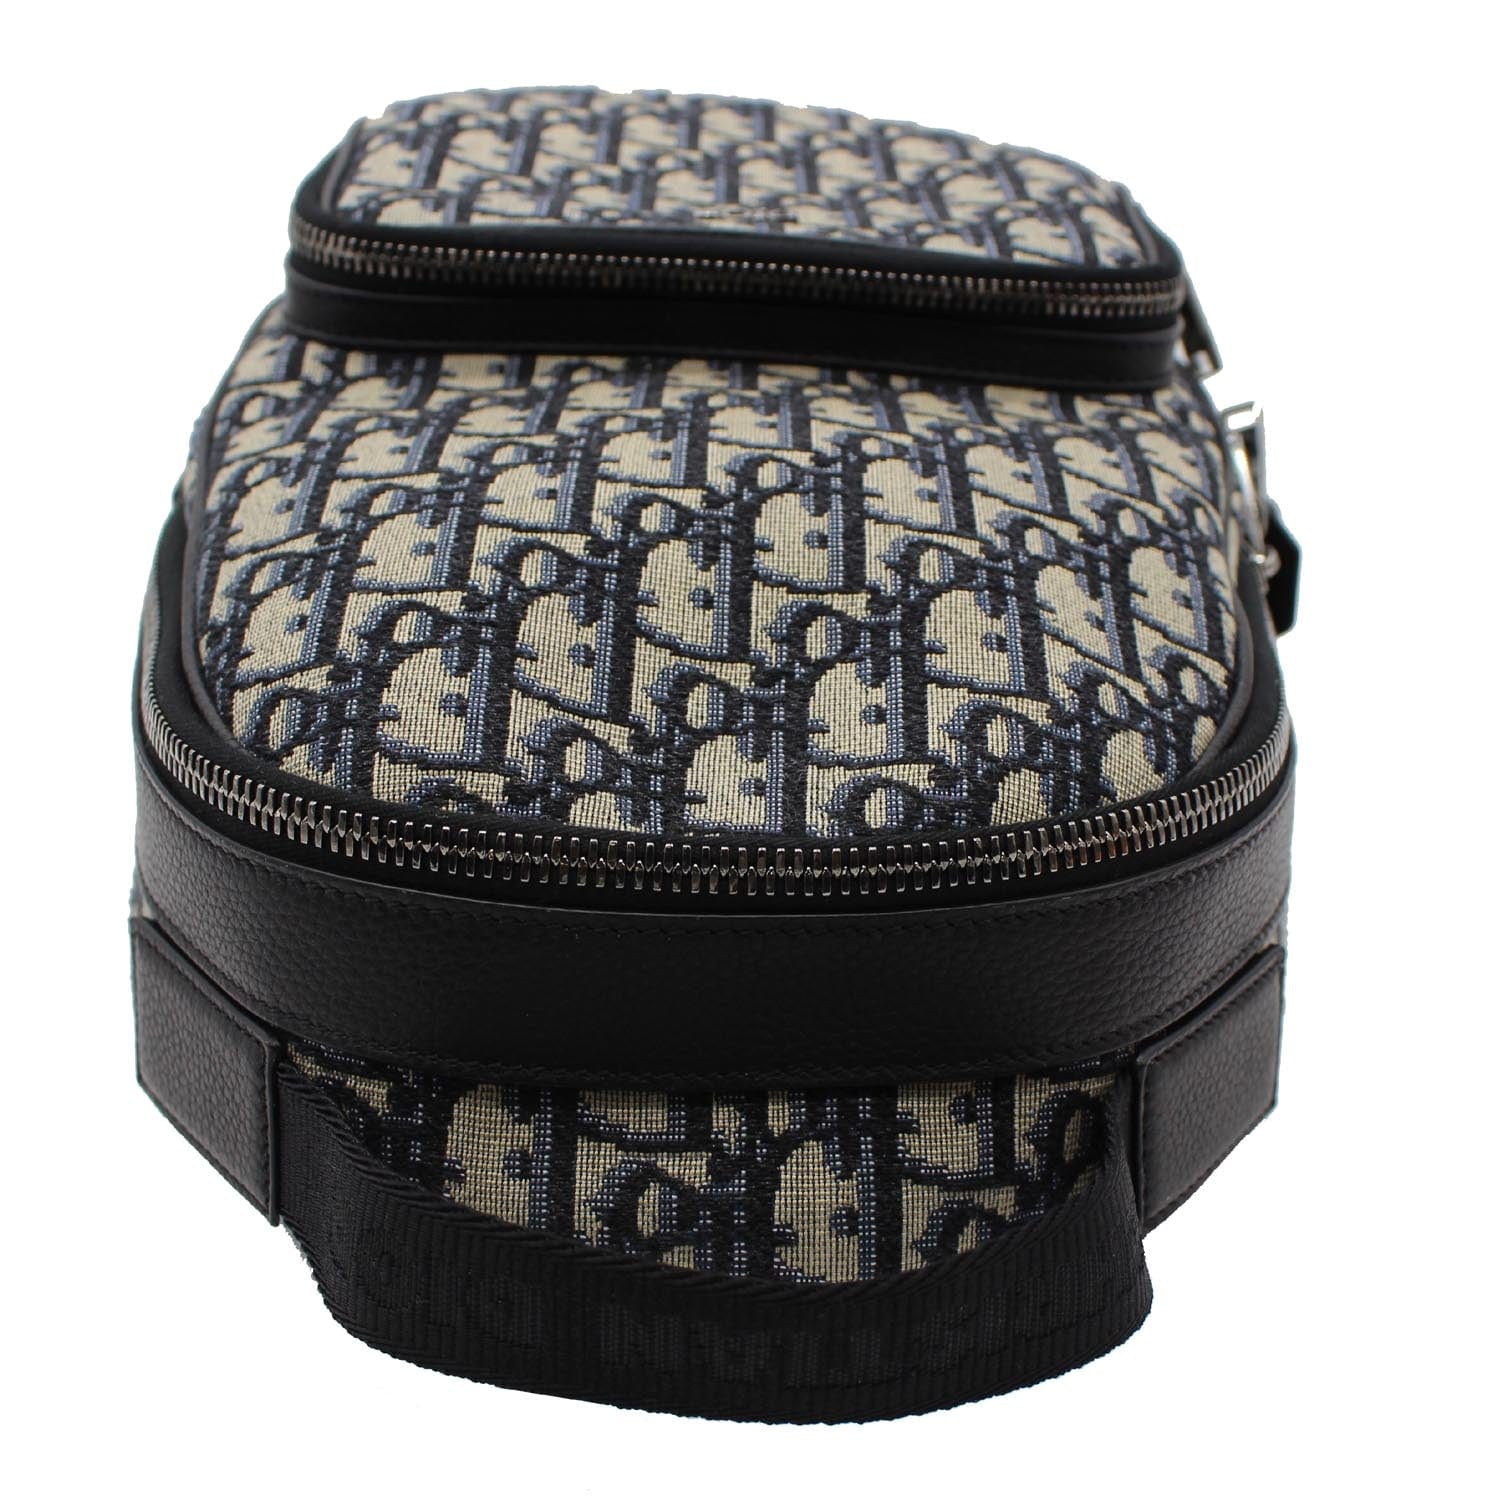 Rider Backpack Beige and Black Dior Oblique Jacquard